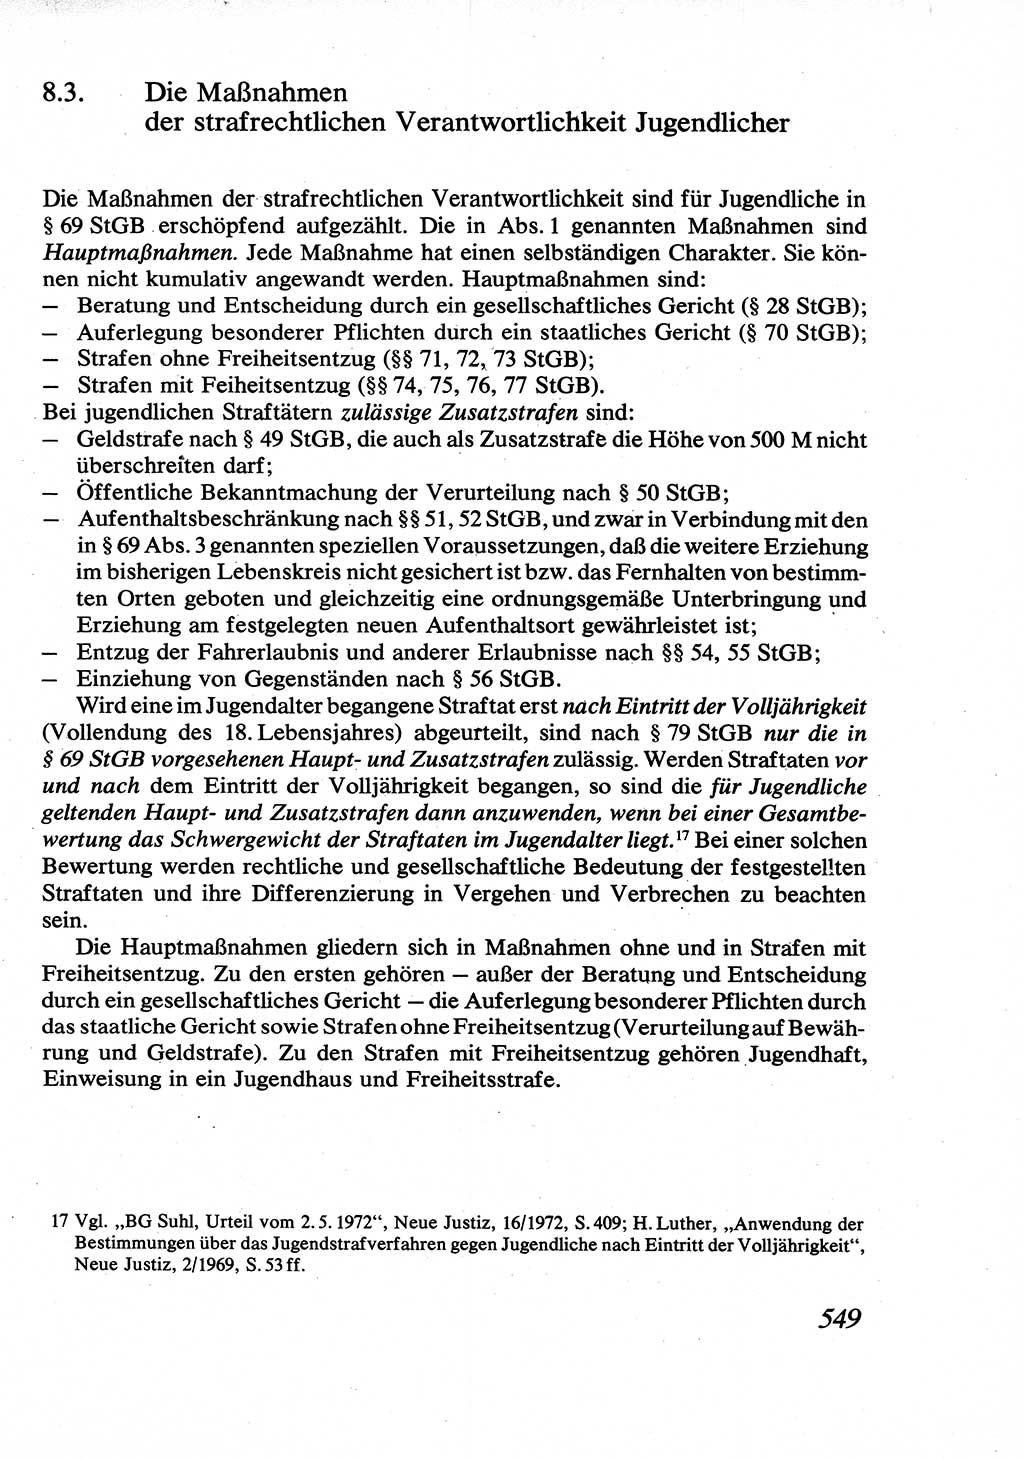 Strafrecht [Deutsche Demokratische Republik (DDR)], Allgemeiner Teil, Lehrbuch 1976, Seite 549 (Strafr. DDR AT Lb. 1976, S. 549)